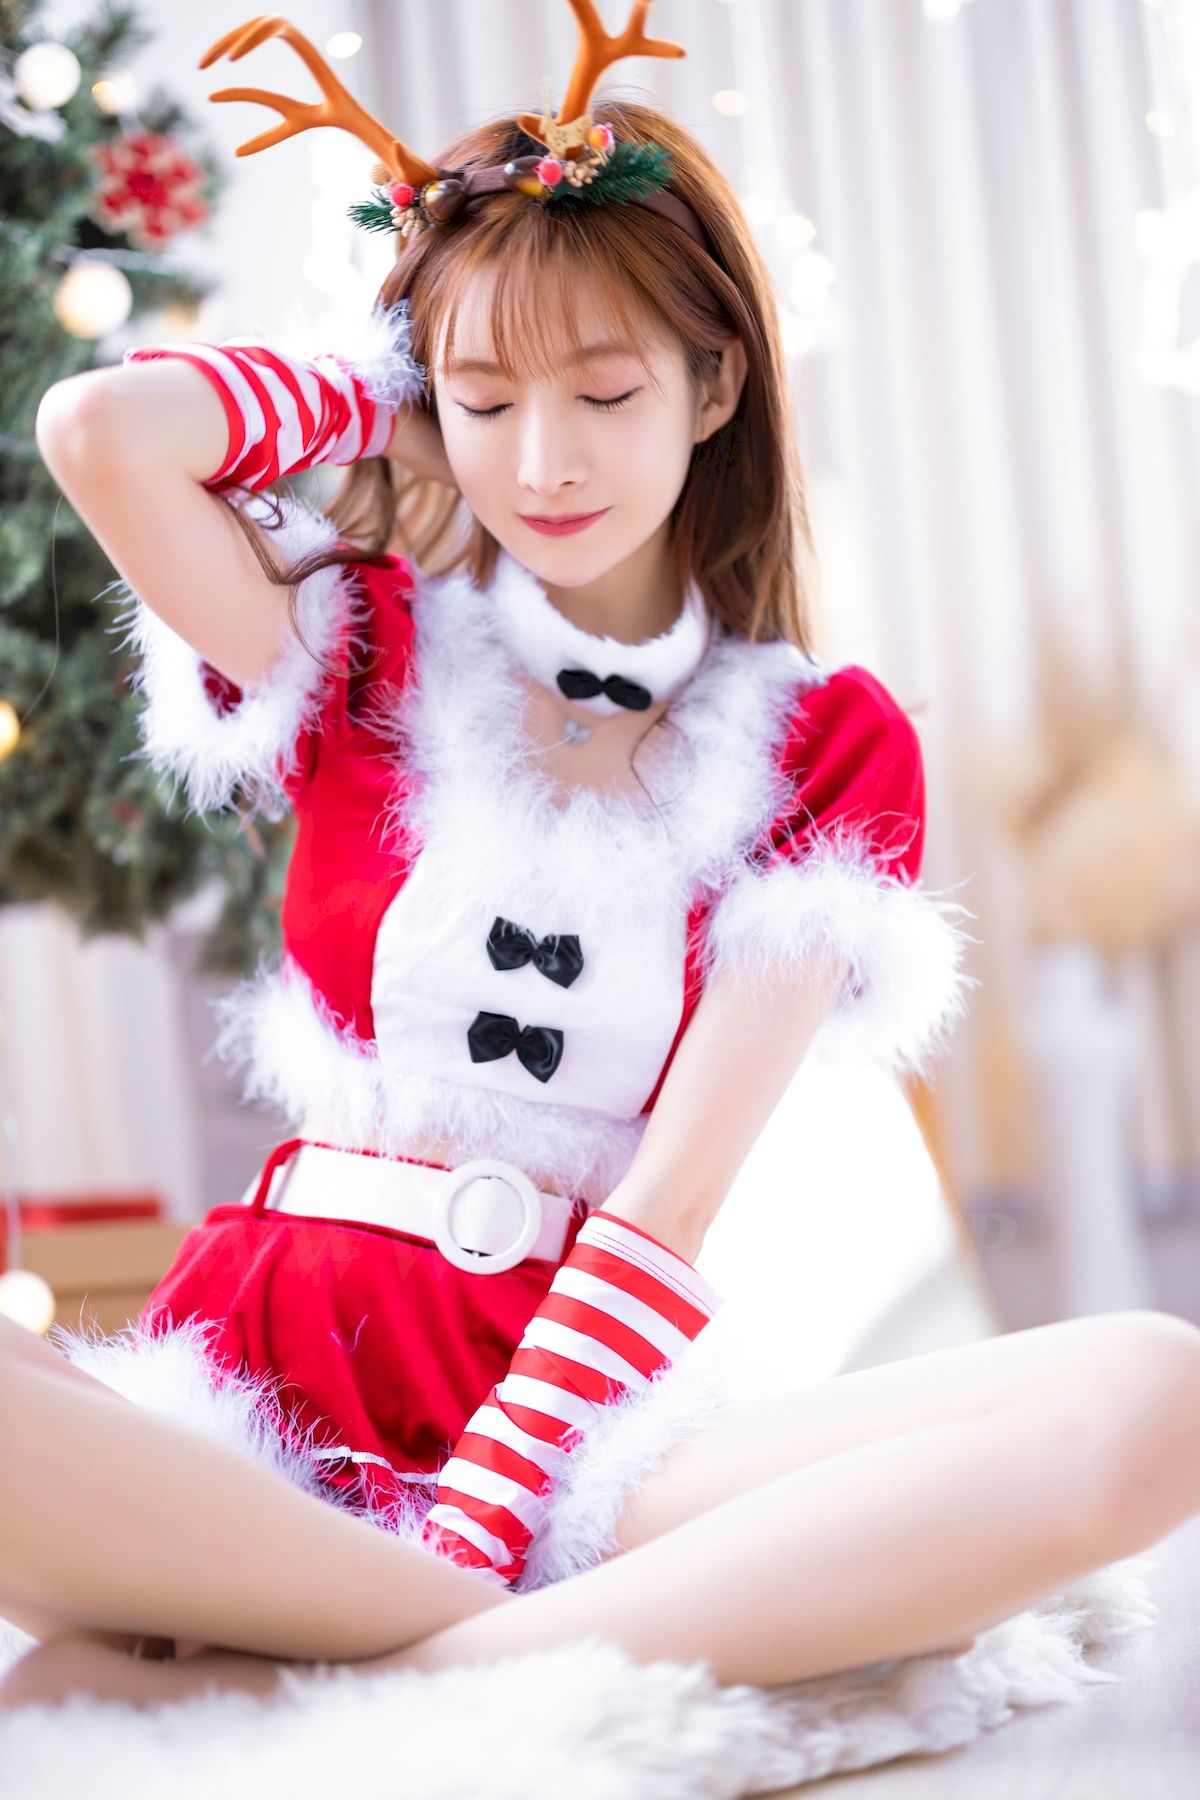 王羽衫红色圣诞服饰搭配肉色丝袜甜美写真